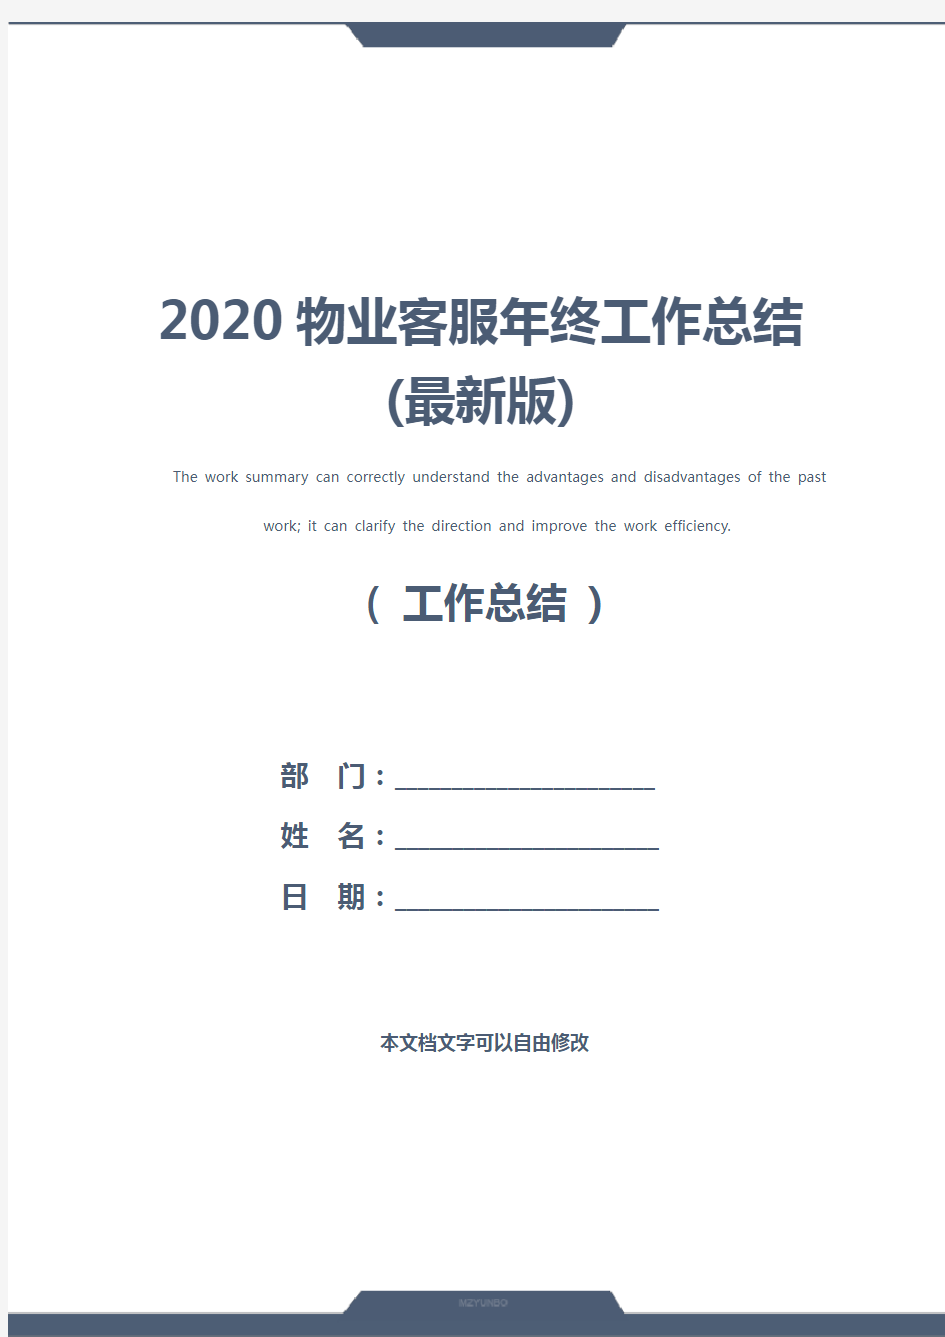 2020物业客服年终工作总结(最新版)